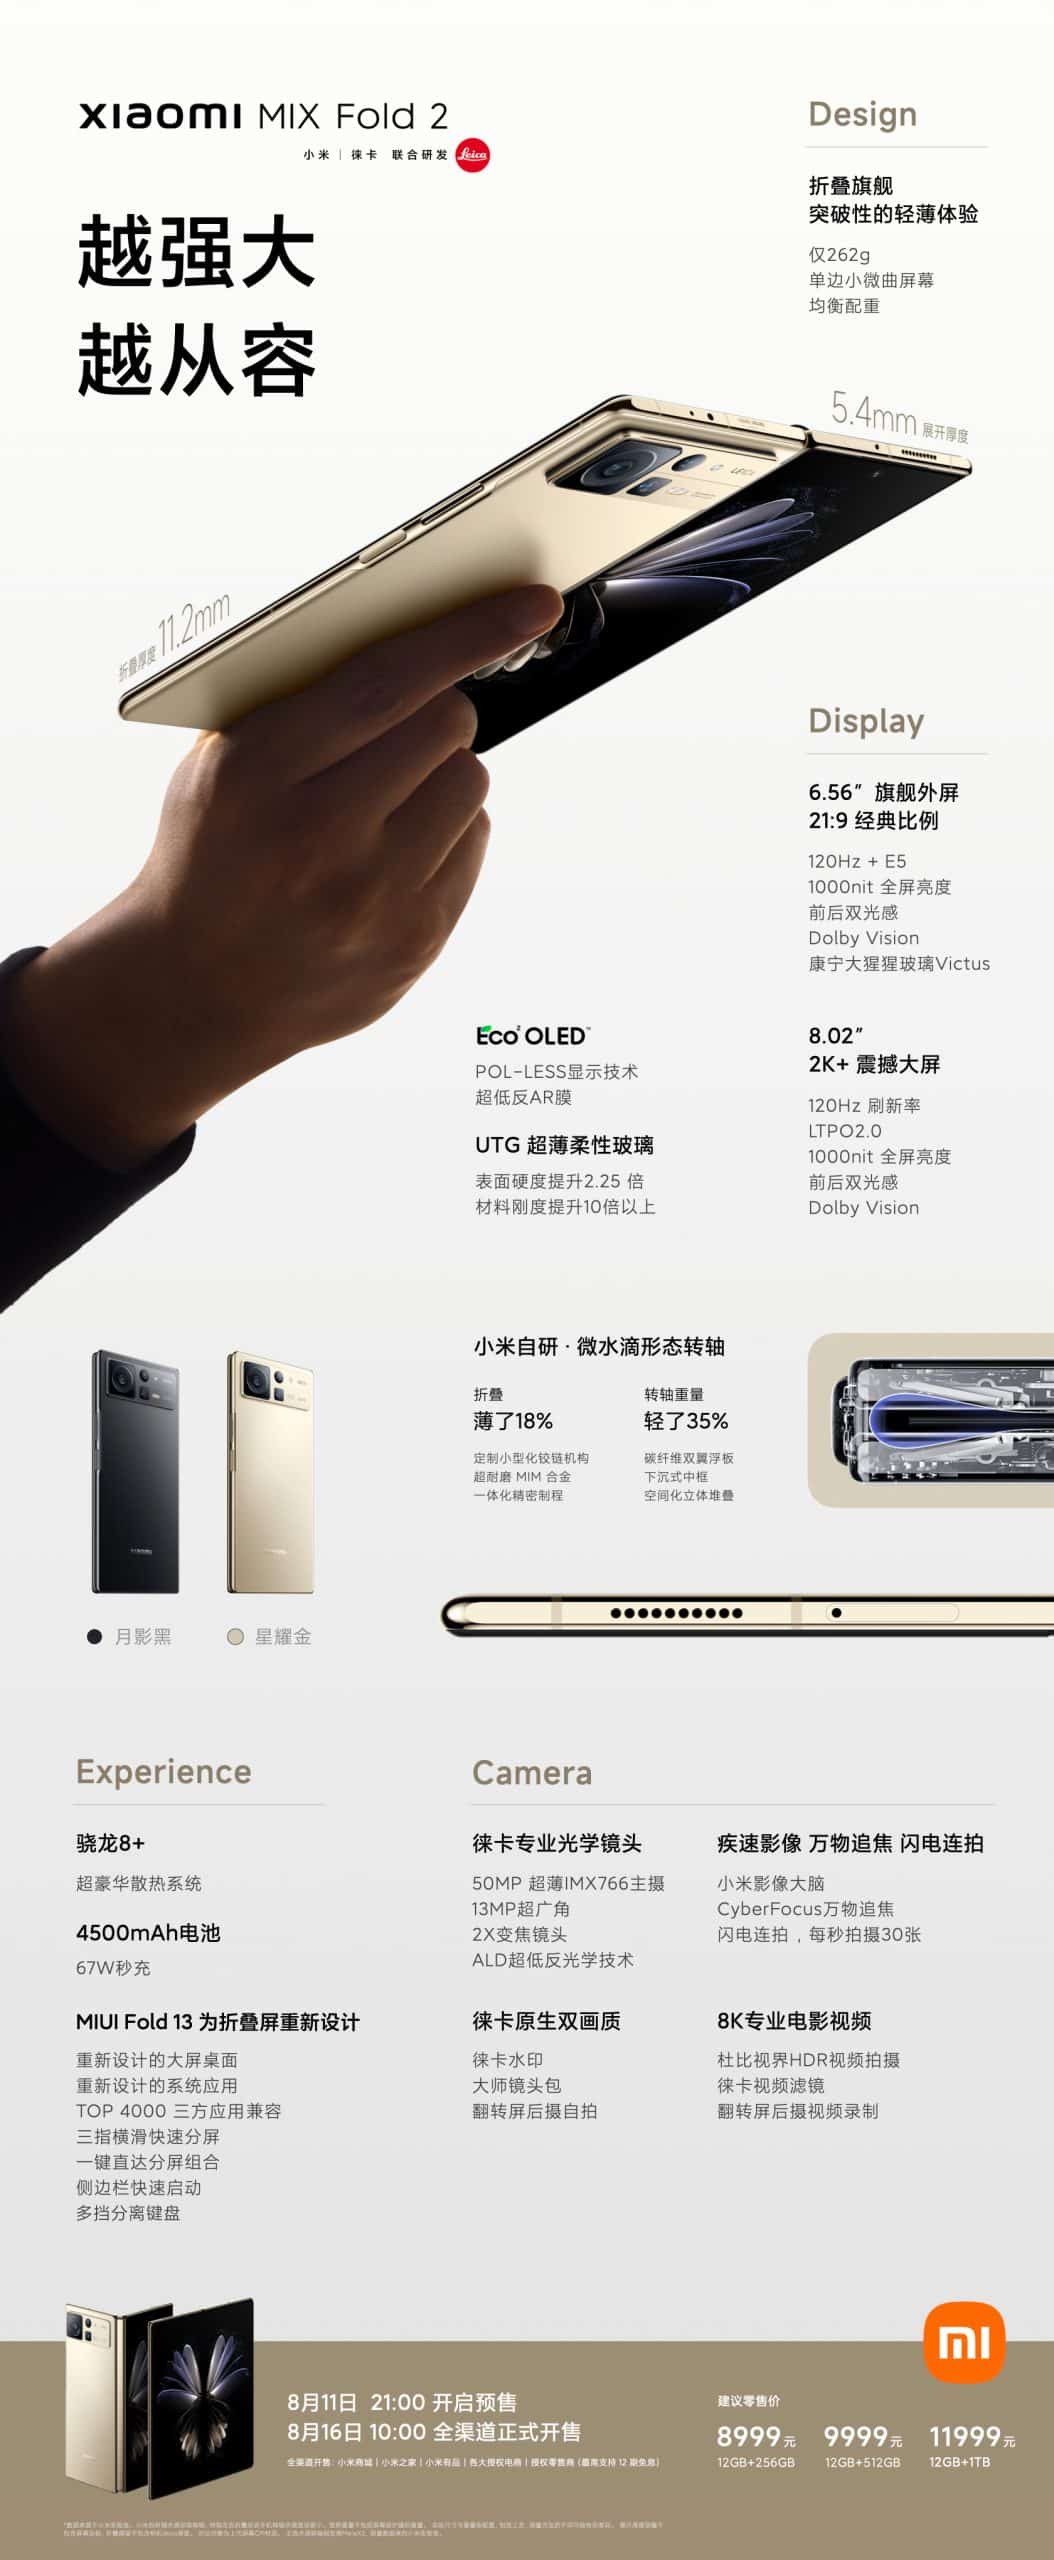 Xiaomi MIX Fold 2 features